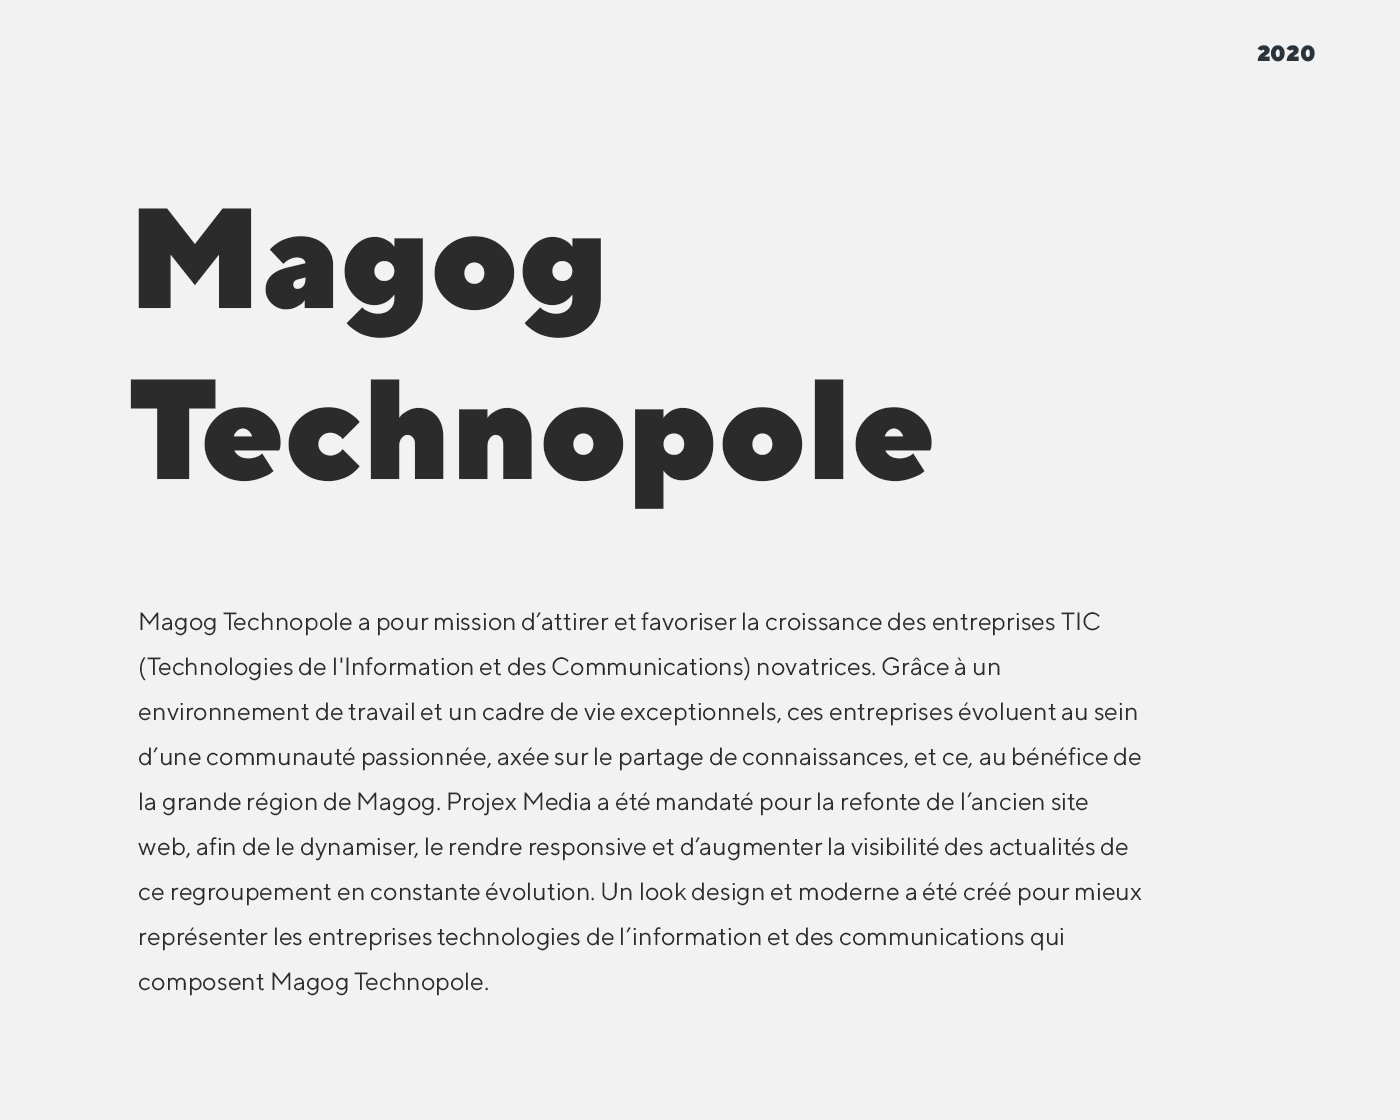 Site Web de Magog Technopole qui favorise la croissance des entreprises de Technologies de l’Information et des Communications / 2020 - Réalisation signée Projex Media